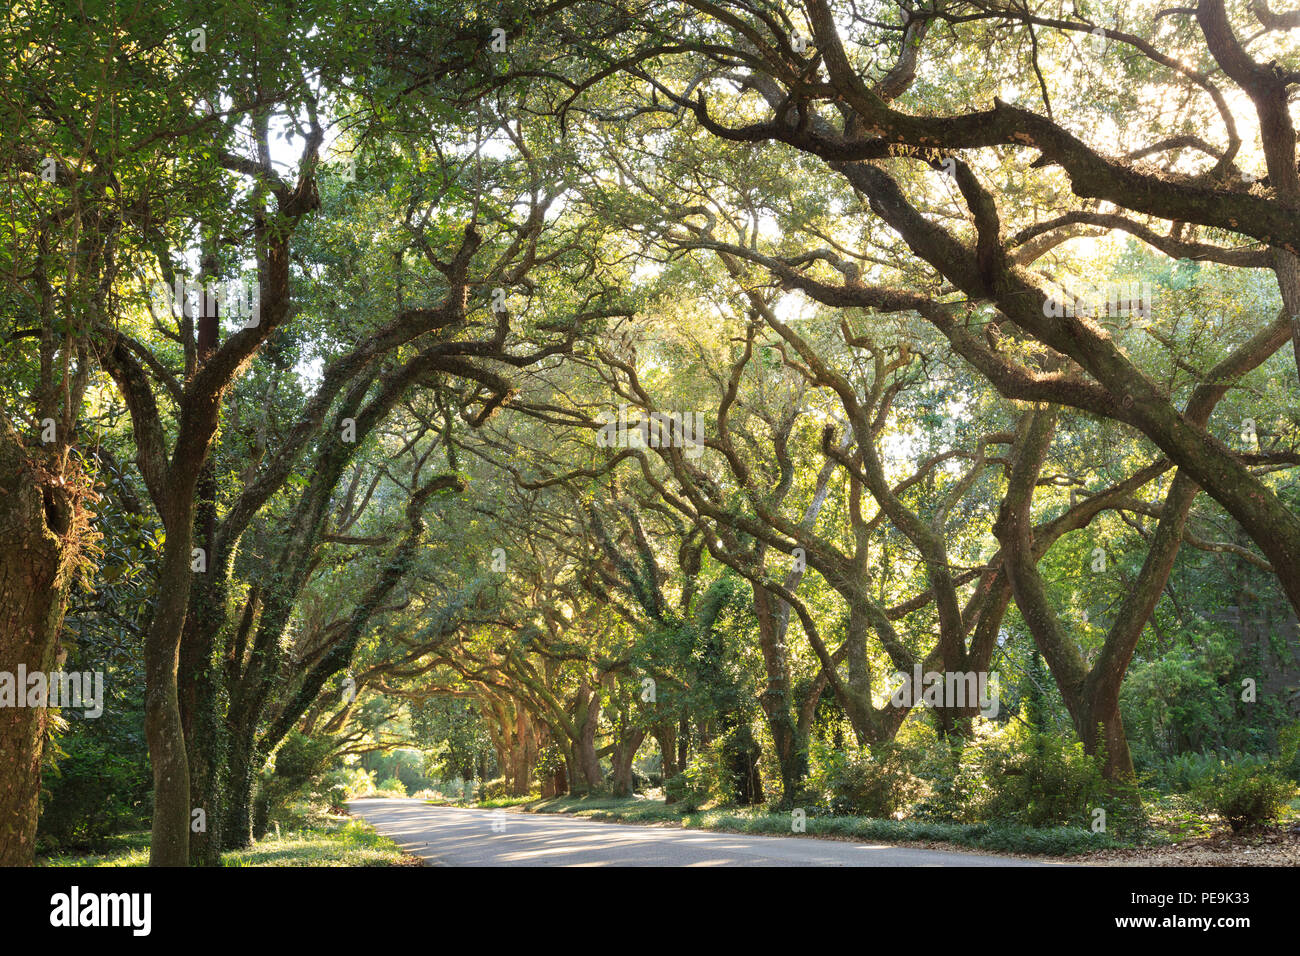 Vieux Chêne de Hundred-Year allee sur la route, de Magnolia Springs, Alabama, Etats-Unis Banque D'Images